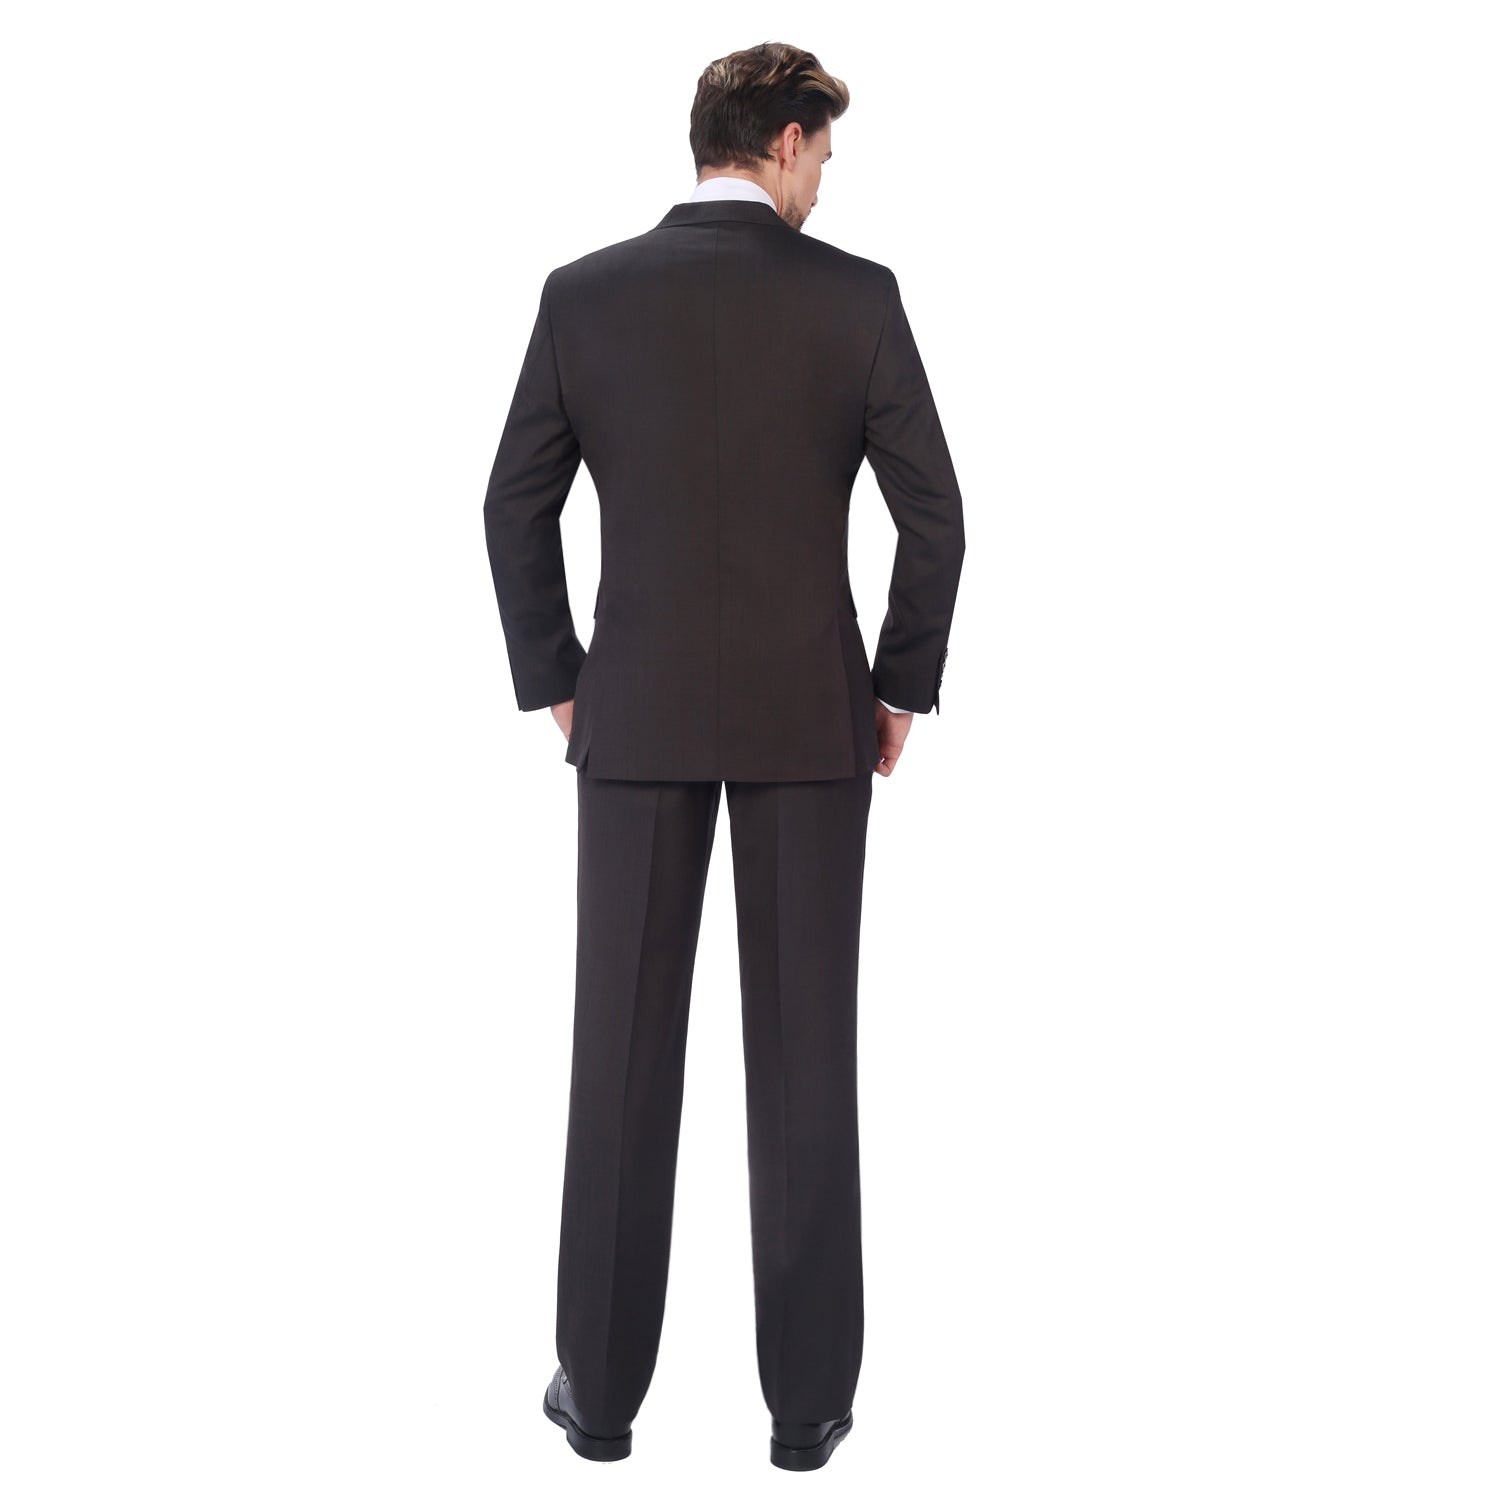 P&L Men's 2-Piece Classic Fit Wool Blend Suit Jacket & Pants Set